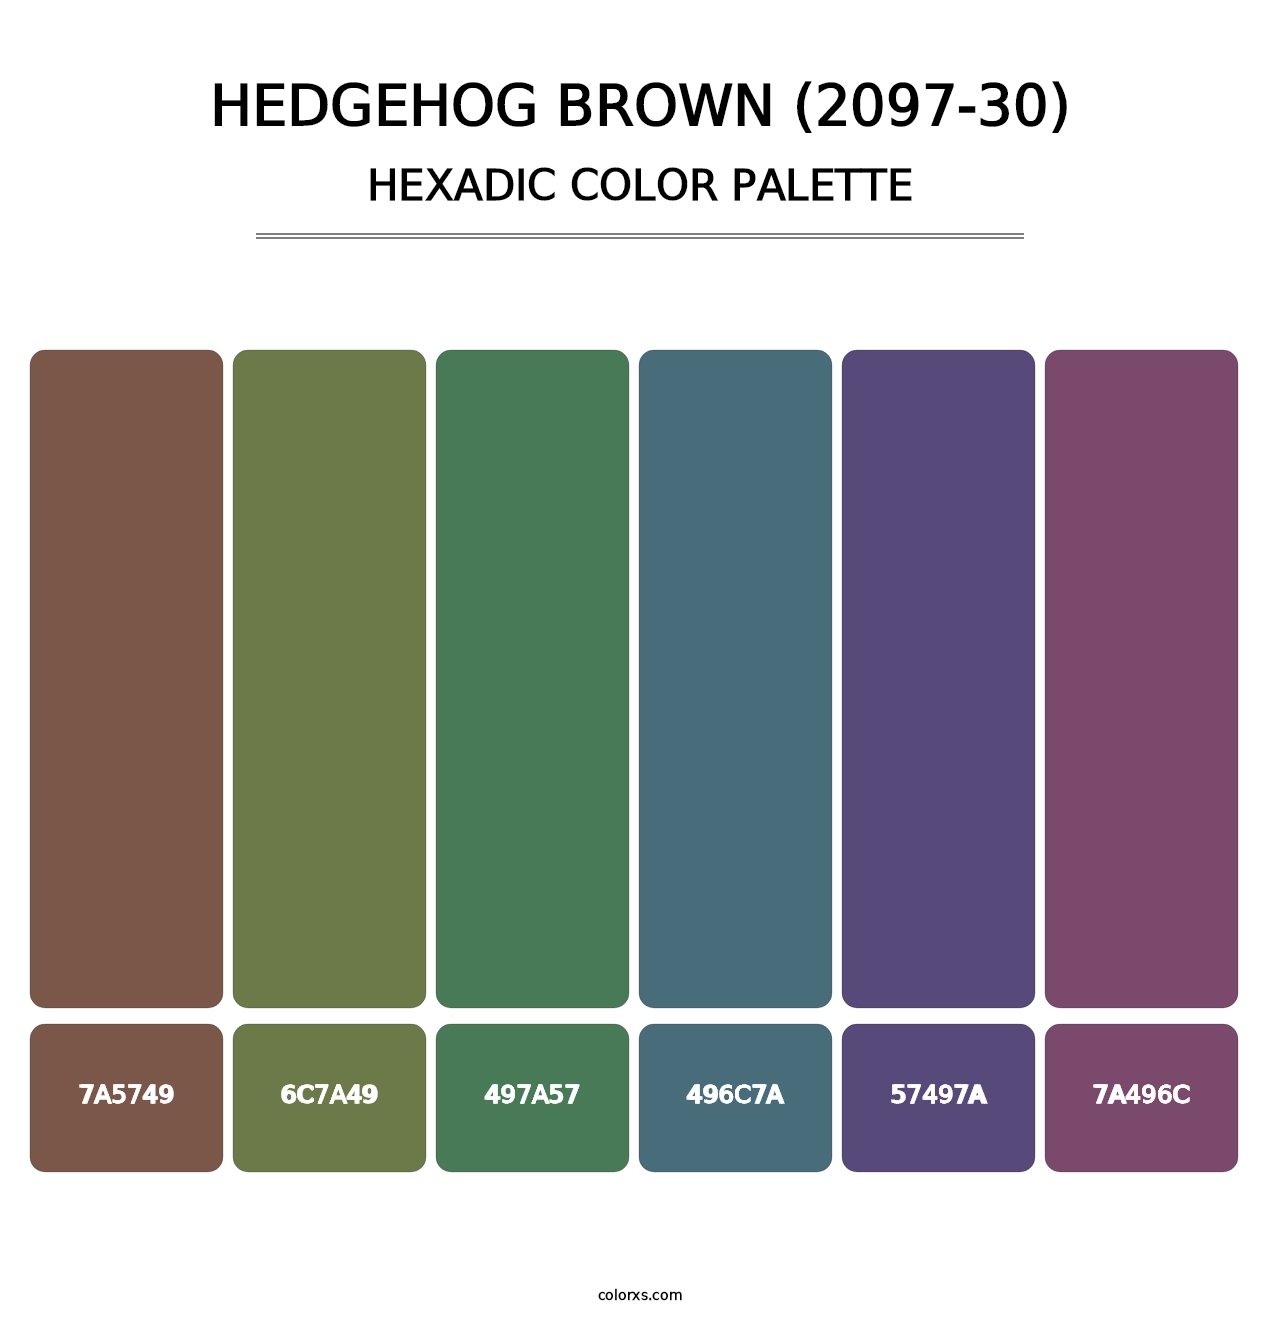 Hedgehog Brown (2097-30) - Hexadic Color Palette